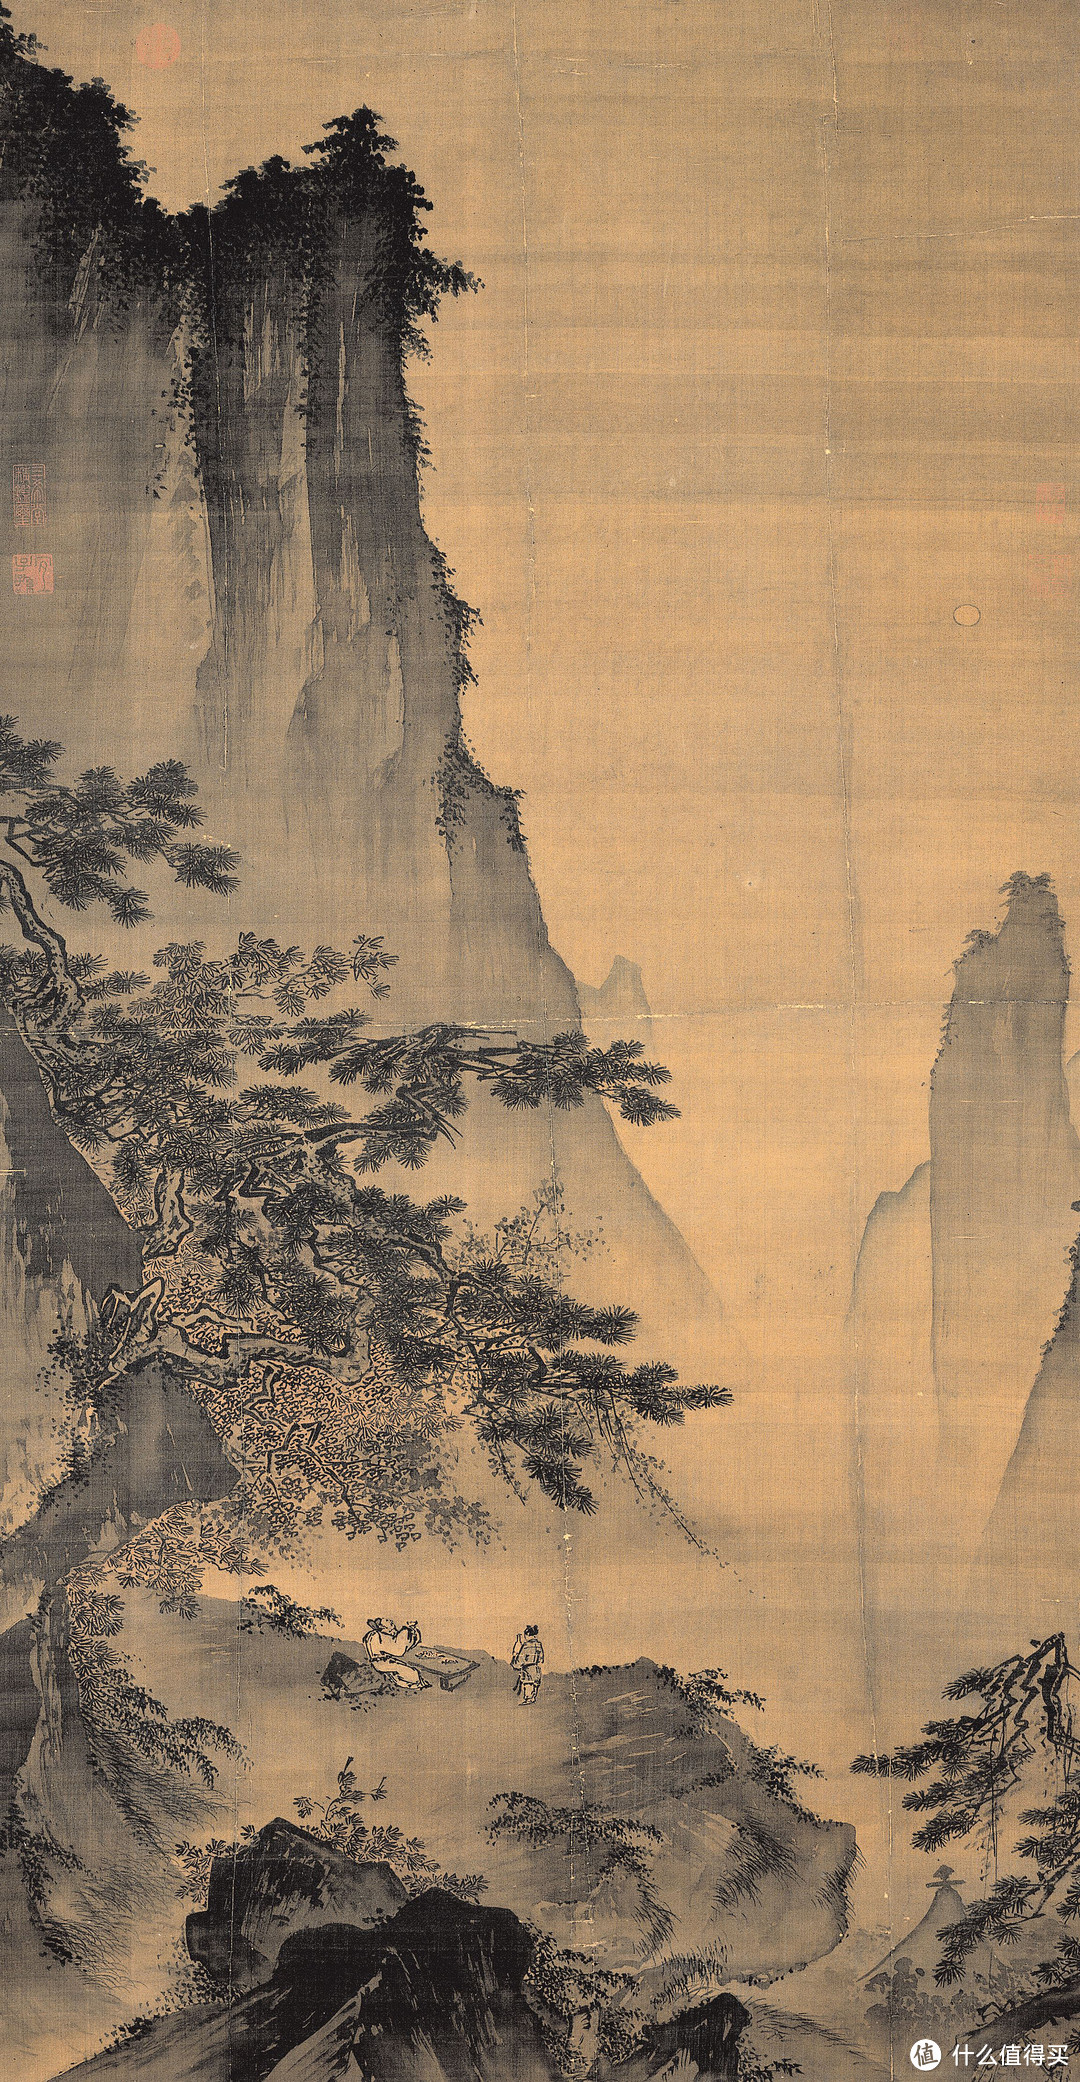 我们身边的传统文化——古代国画 篇三:宋元山水画